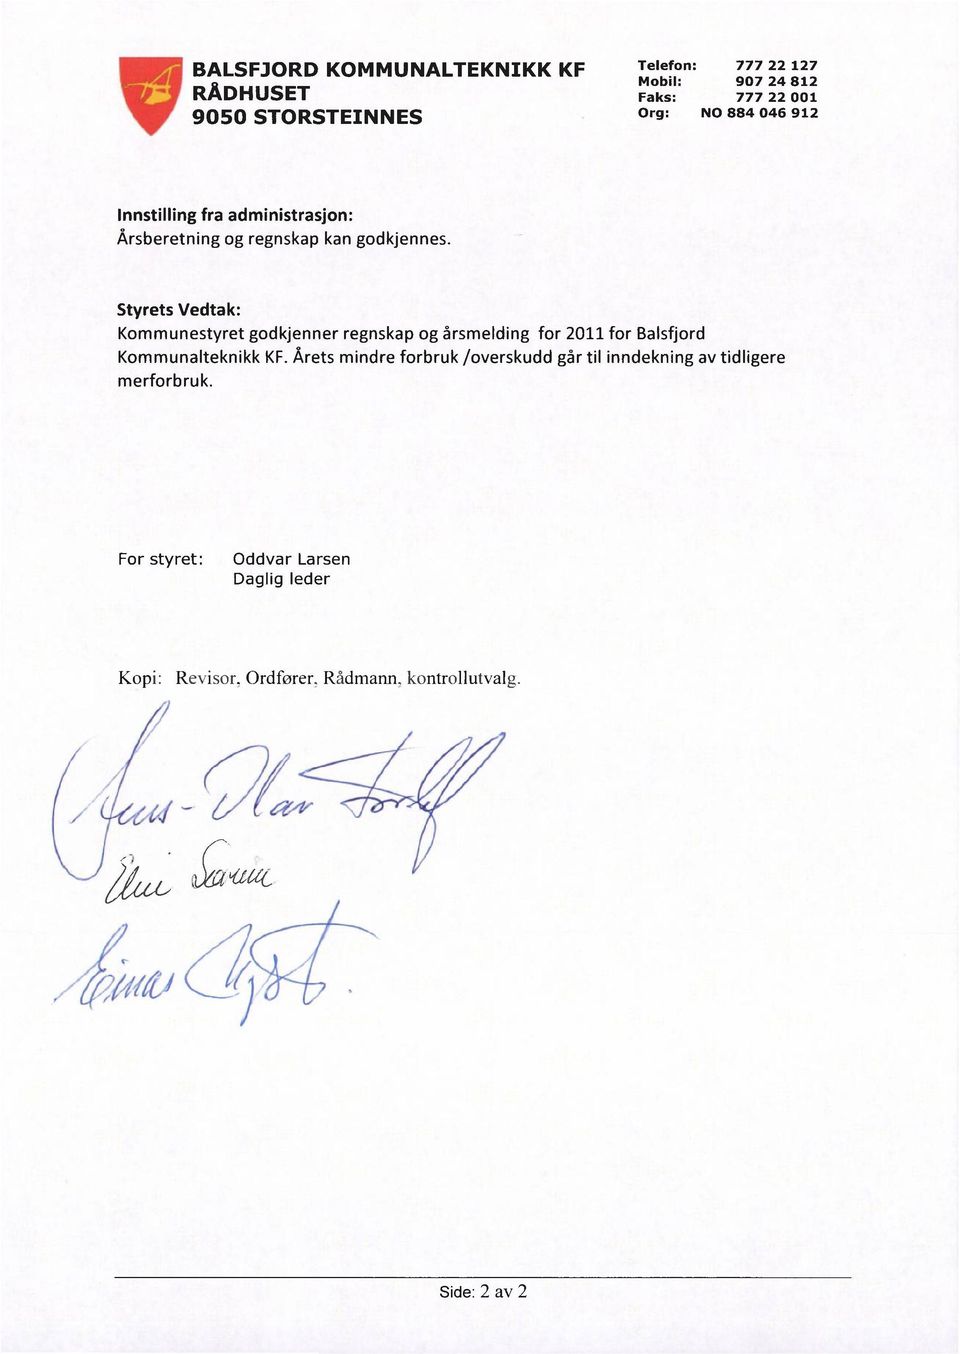 Styrets Vedtak: Kommunestyret godkjenner regnskap og årsmelding for 2011 for Balsfjord Kommunalteknikk KF.